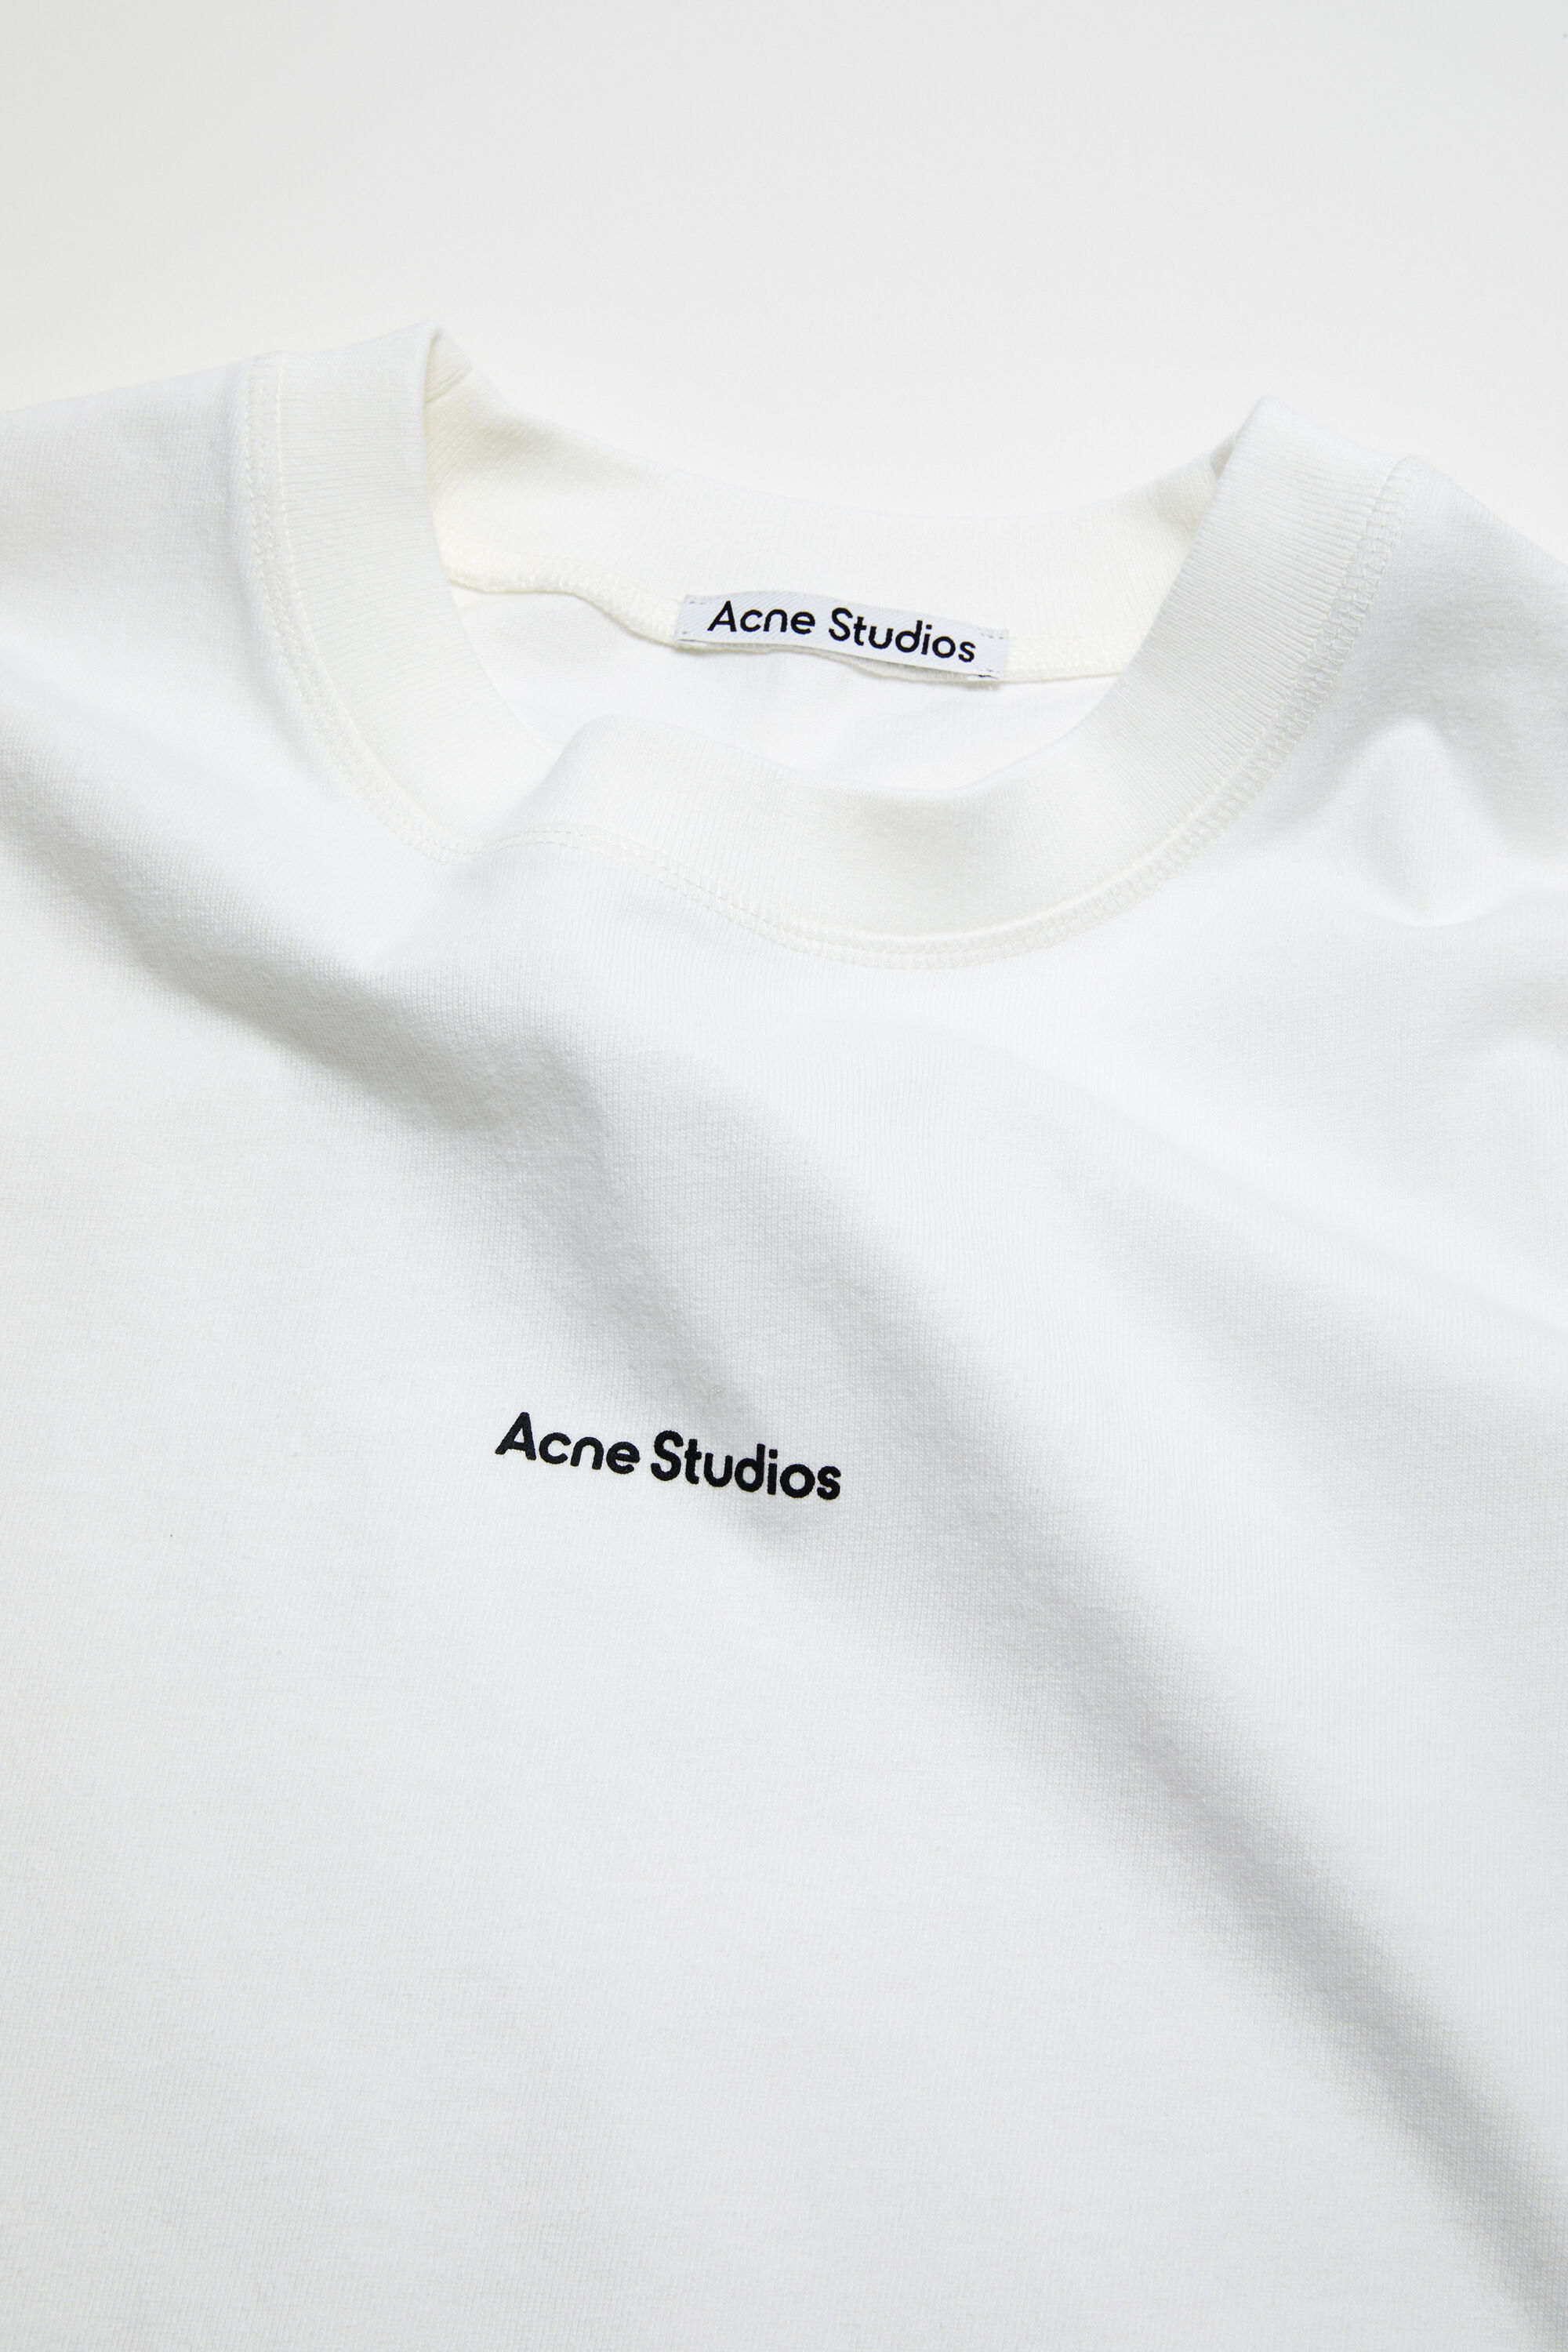 【新品未使用】 Acne Studios アクネ ストゥディオズ レディース Tシャツ S/S T-SHIRT FN-WN-TSHI000196 AL0135 【Sサイズ/AUBERGINE PURPLE】